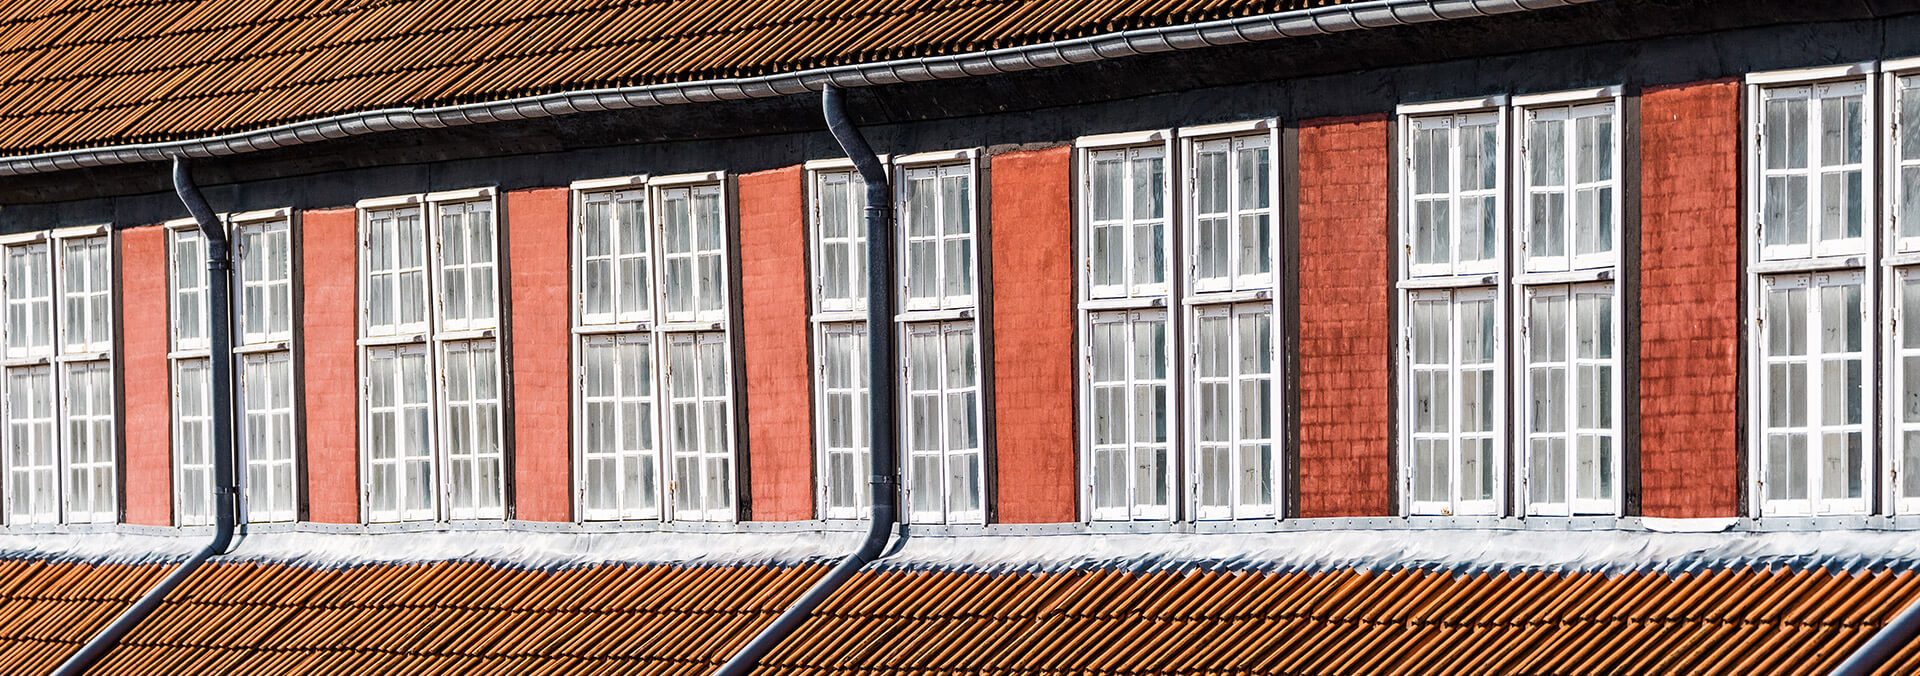 Spanteloftsbygningen på Nyholm